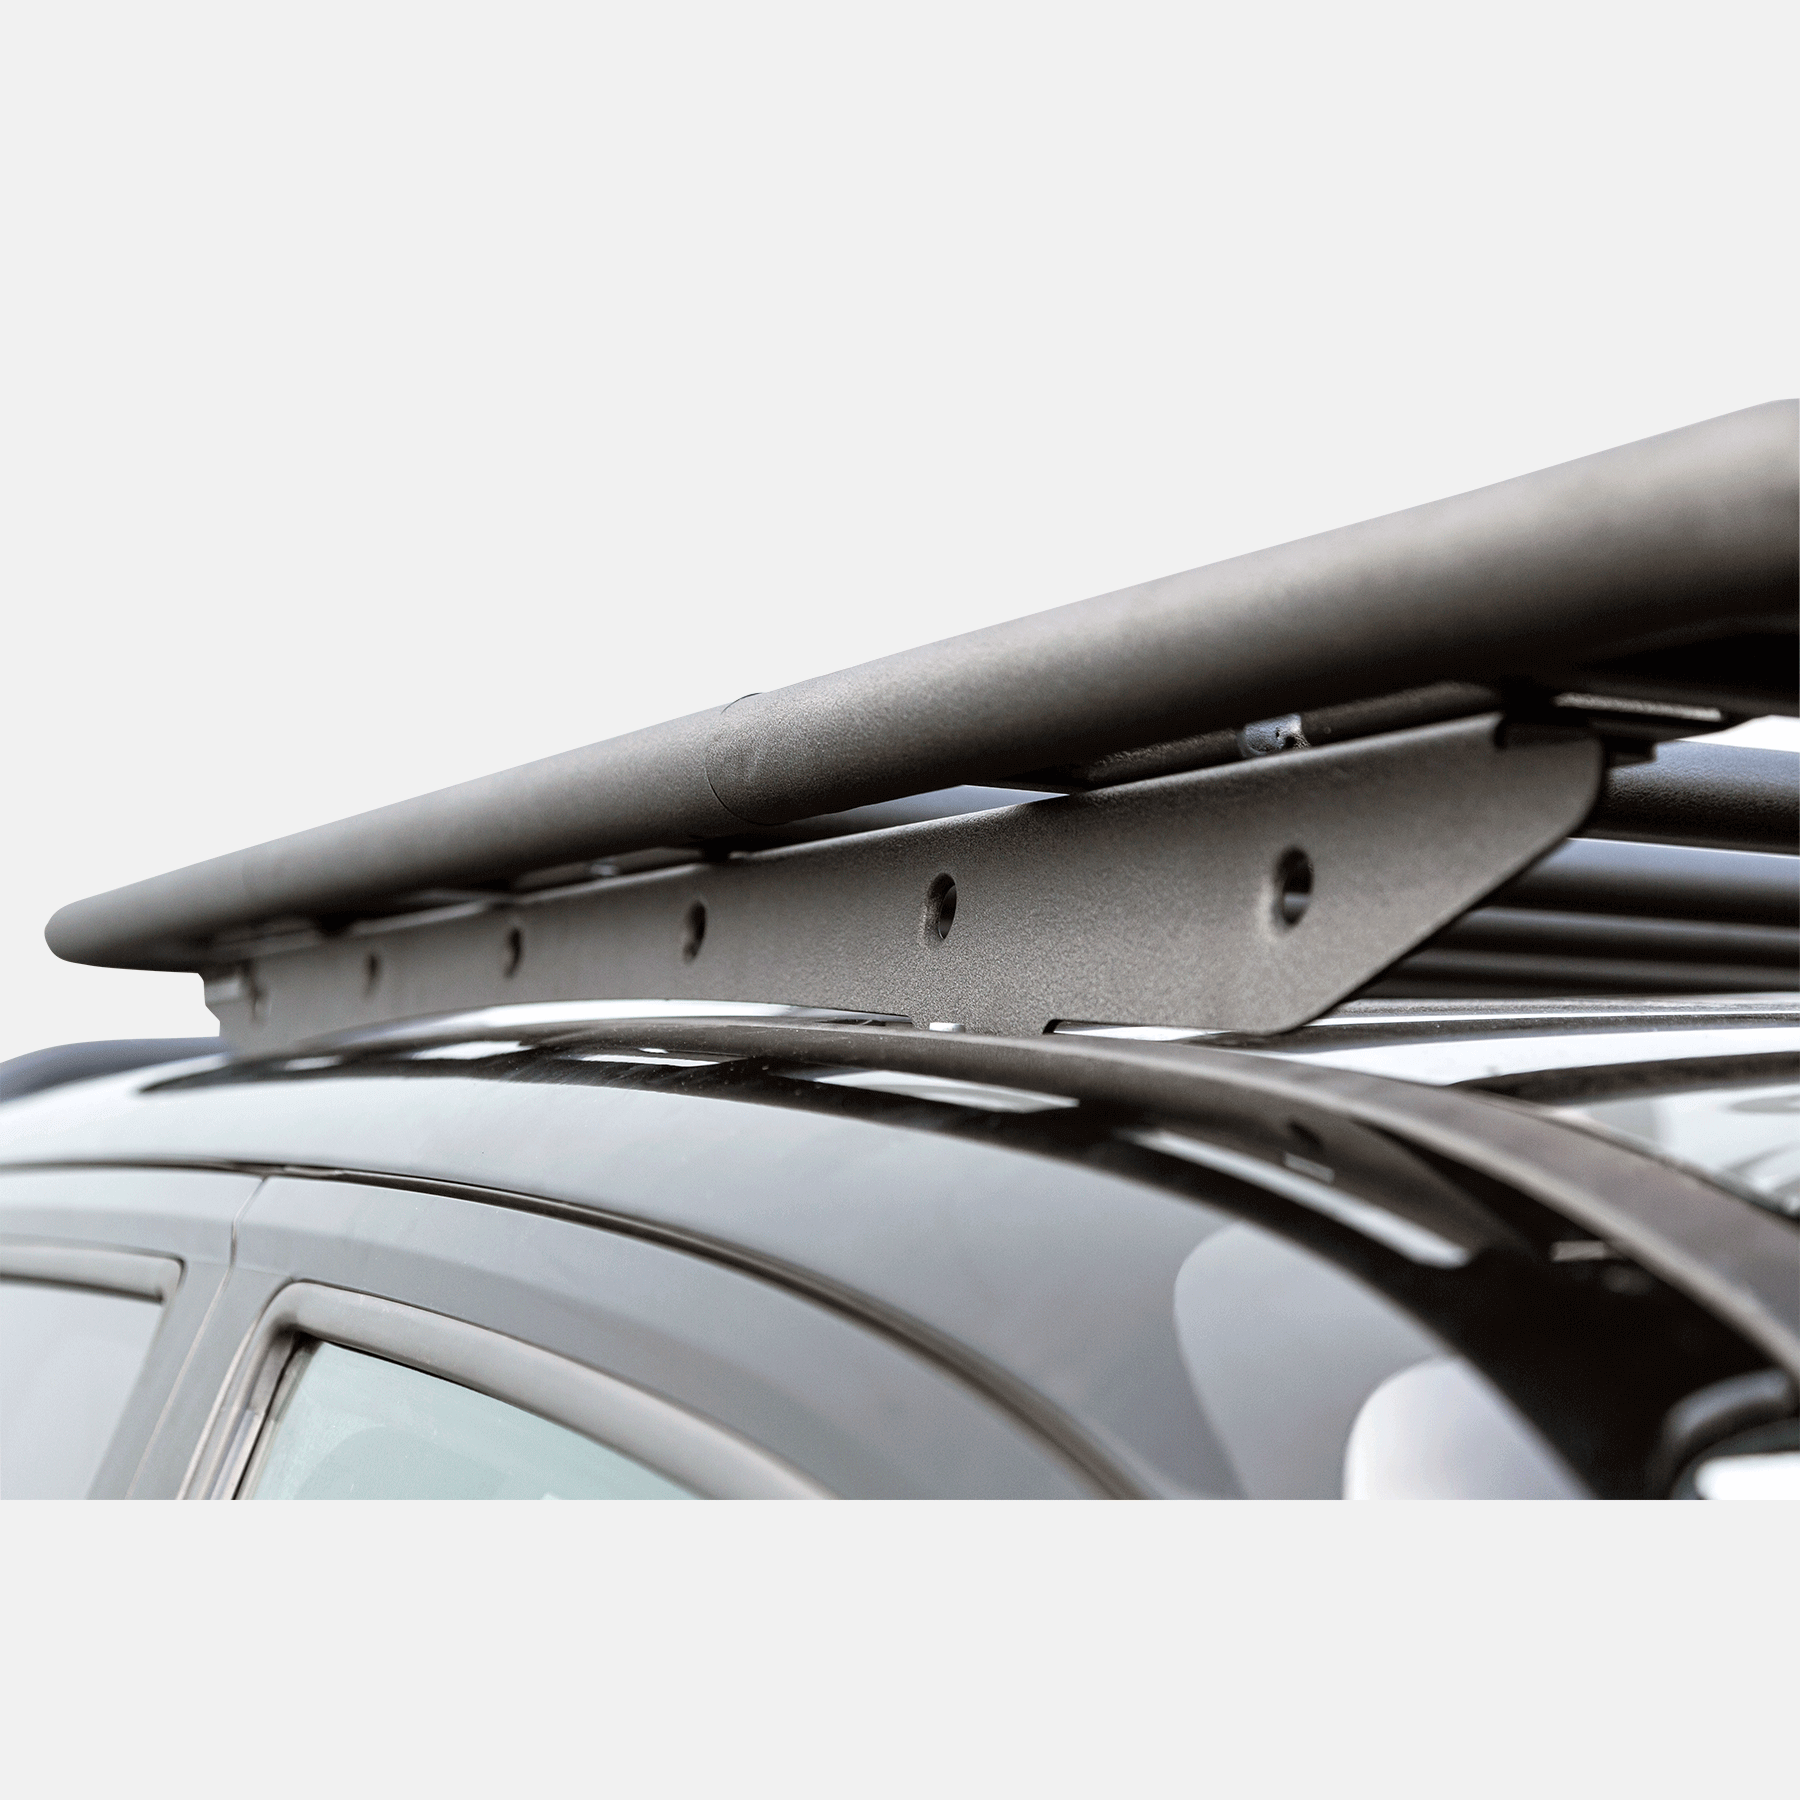 Dachträger NAVIS für Volkswagen Amarok (Bj 2011 - 2020)